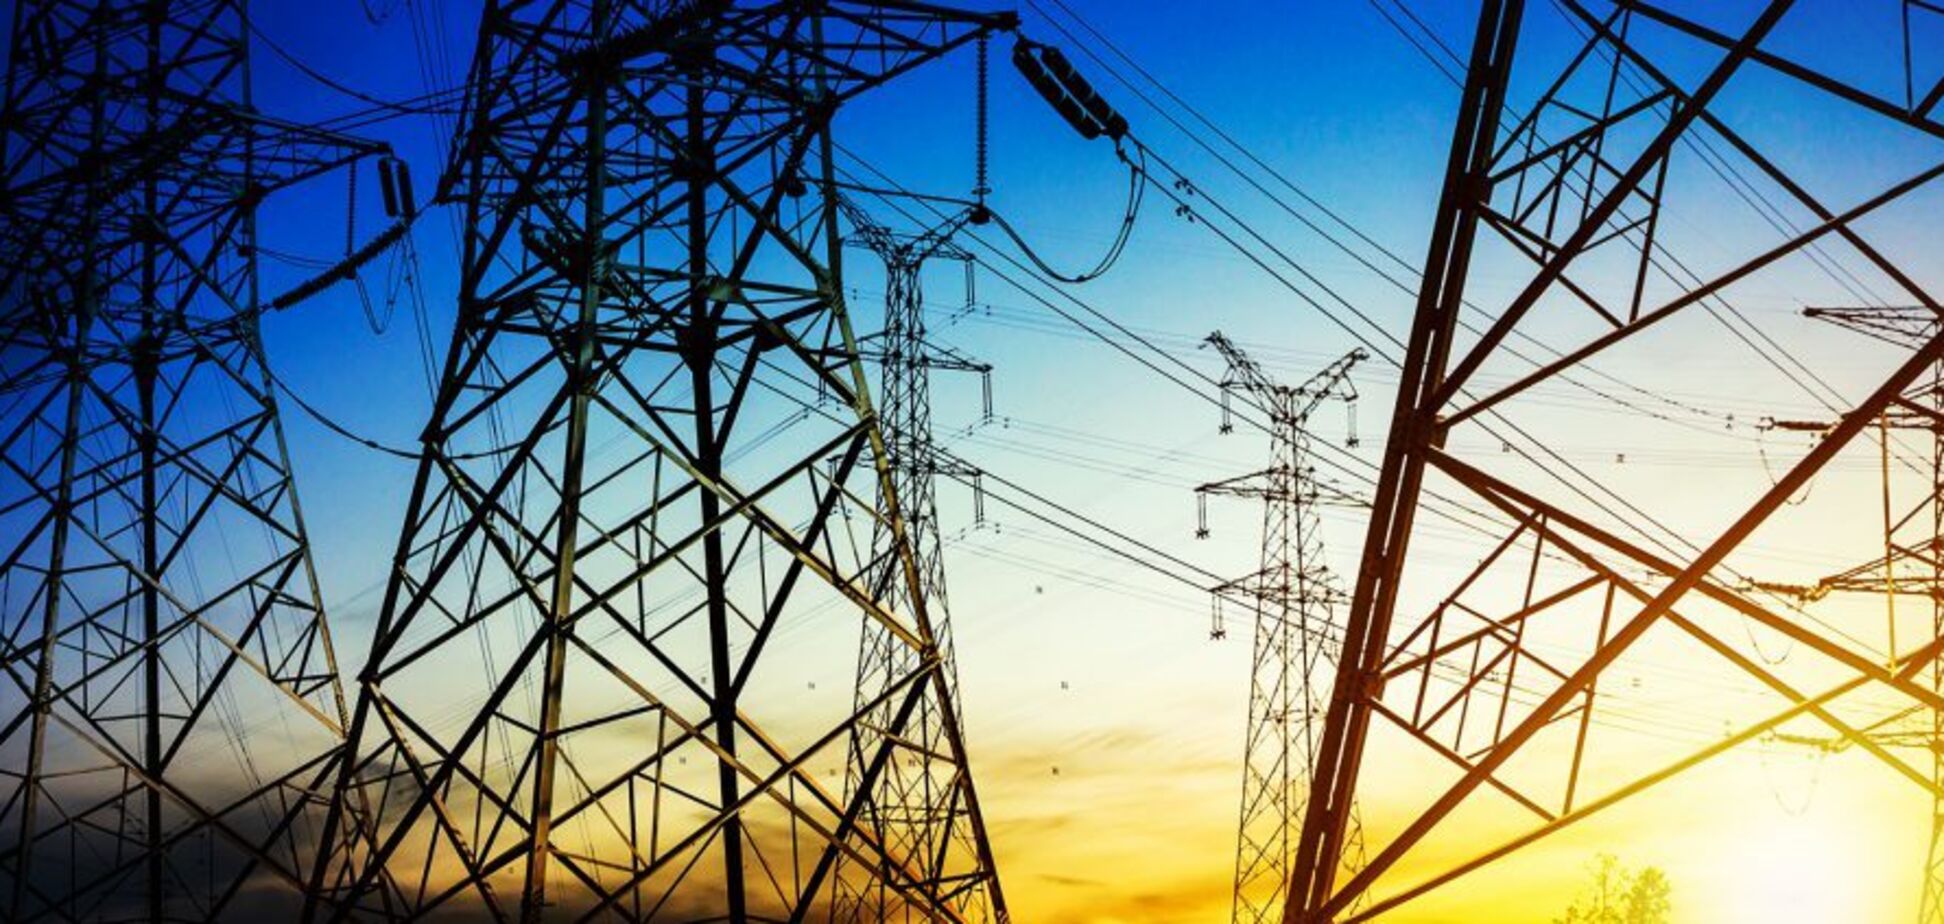 Енергетики відновили електропостачання ще для 7 тисяч родин – ДТЕК